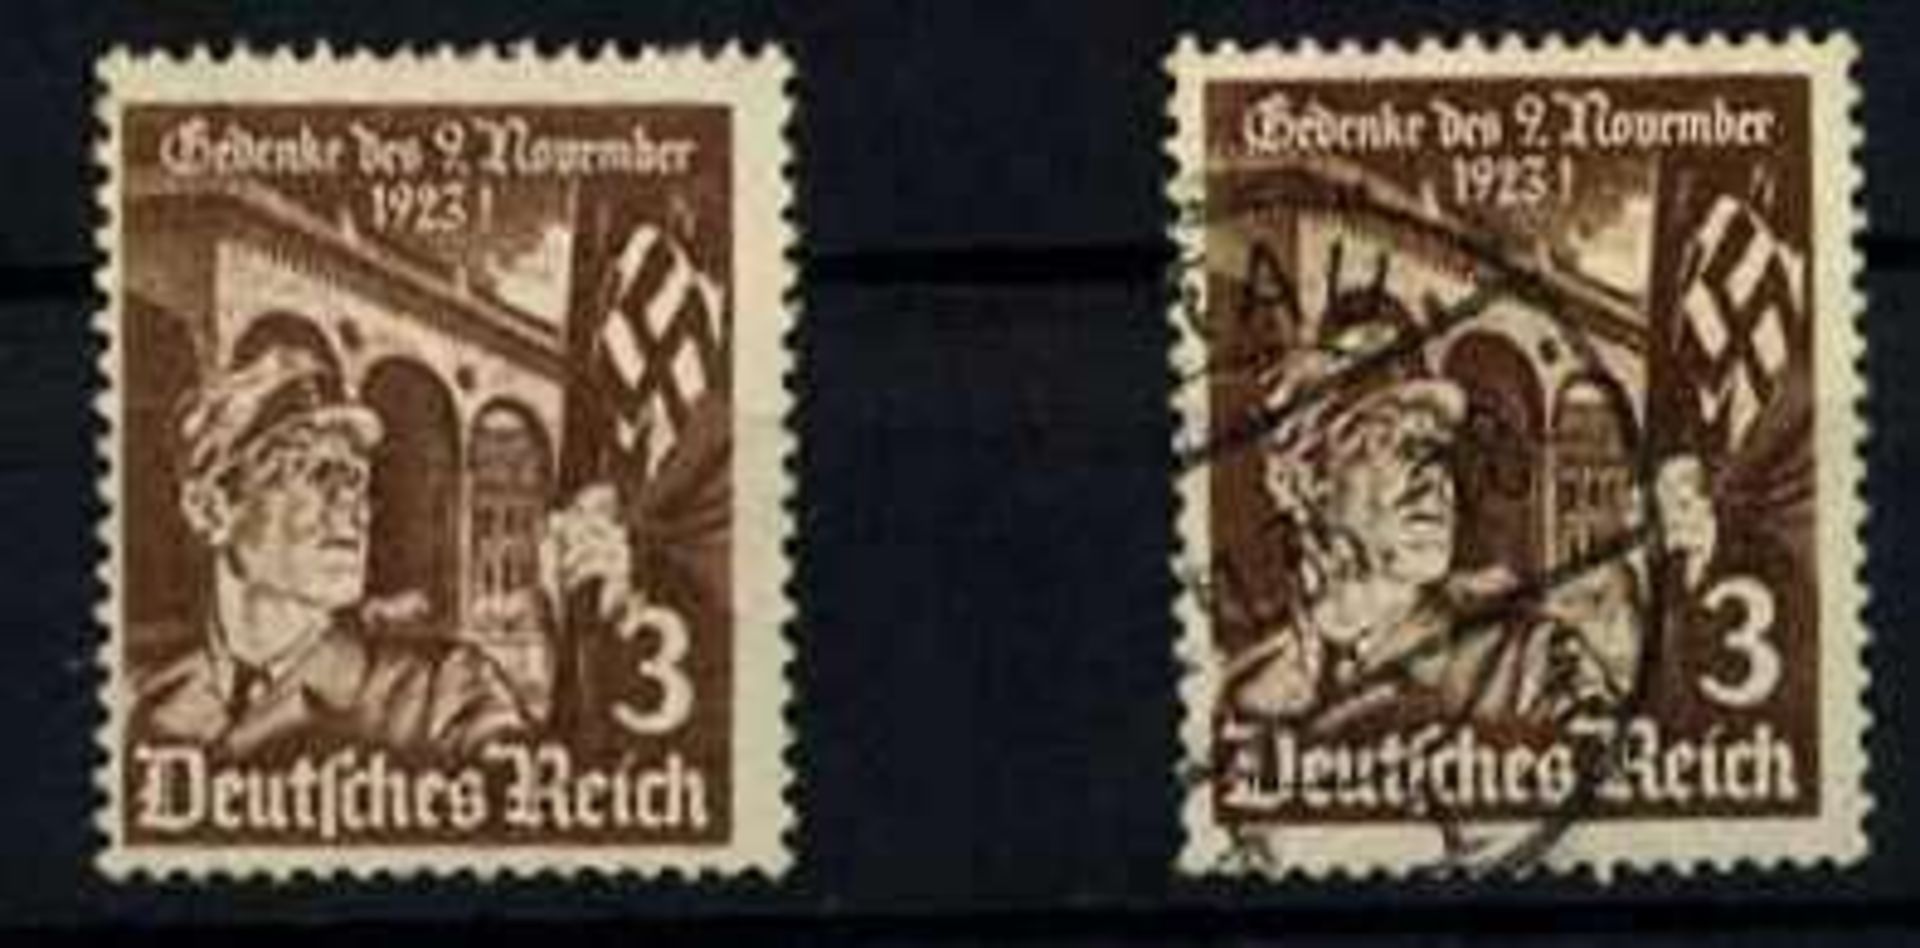 Deutsches Reich 1935, 2 Marken, MiNr. 598y, gestempelt German empire in 1935, 2 brands, MiNr.